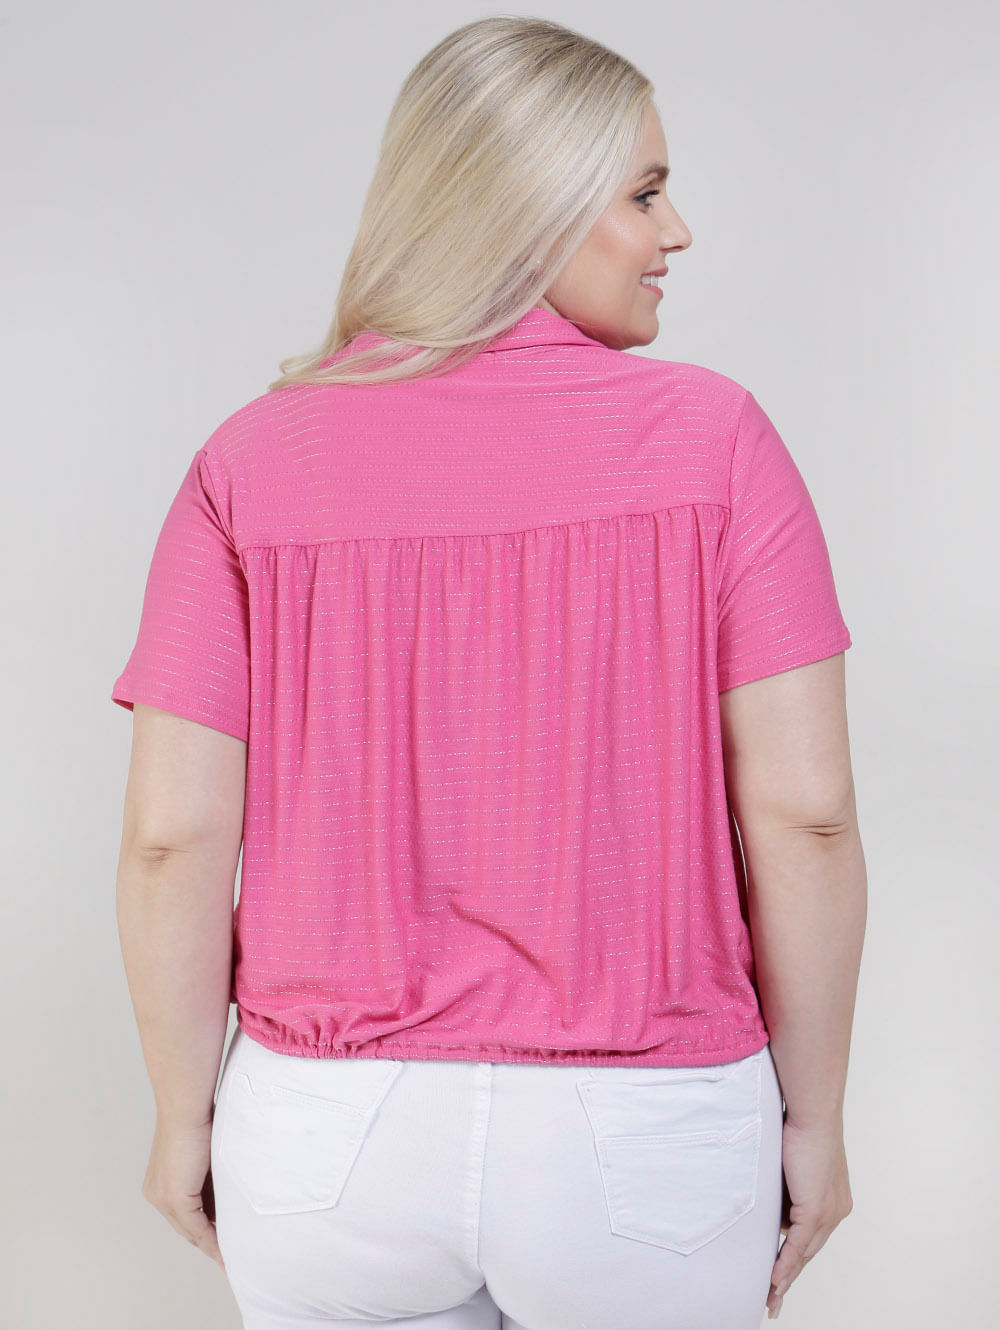 Blusa Plus Size Feminina em Viscolycra Rosa Pink - Estilo Próprio Moda  Feminina Plus Size de Verdade - Loja Online